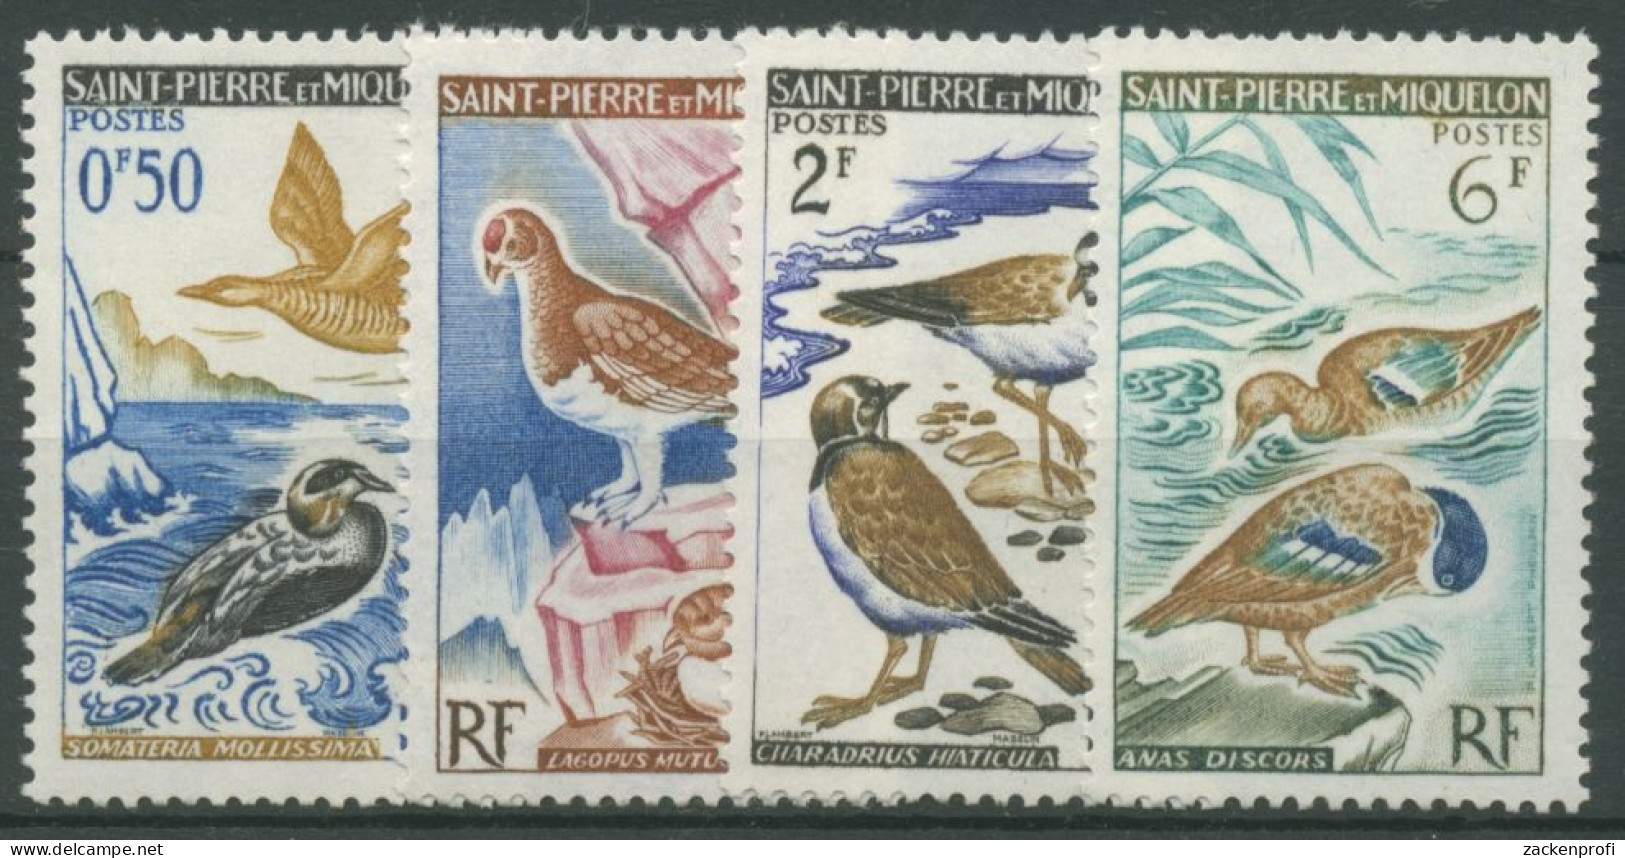 Saint-Pierre Et Miquelon 1963 Vögel Eiderente Regenpfeiffer 398/01 Postfrisch - Unused Stamps